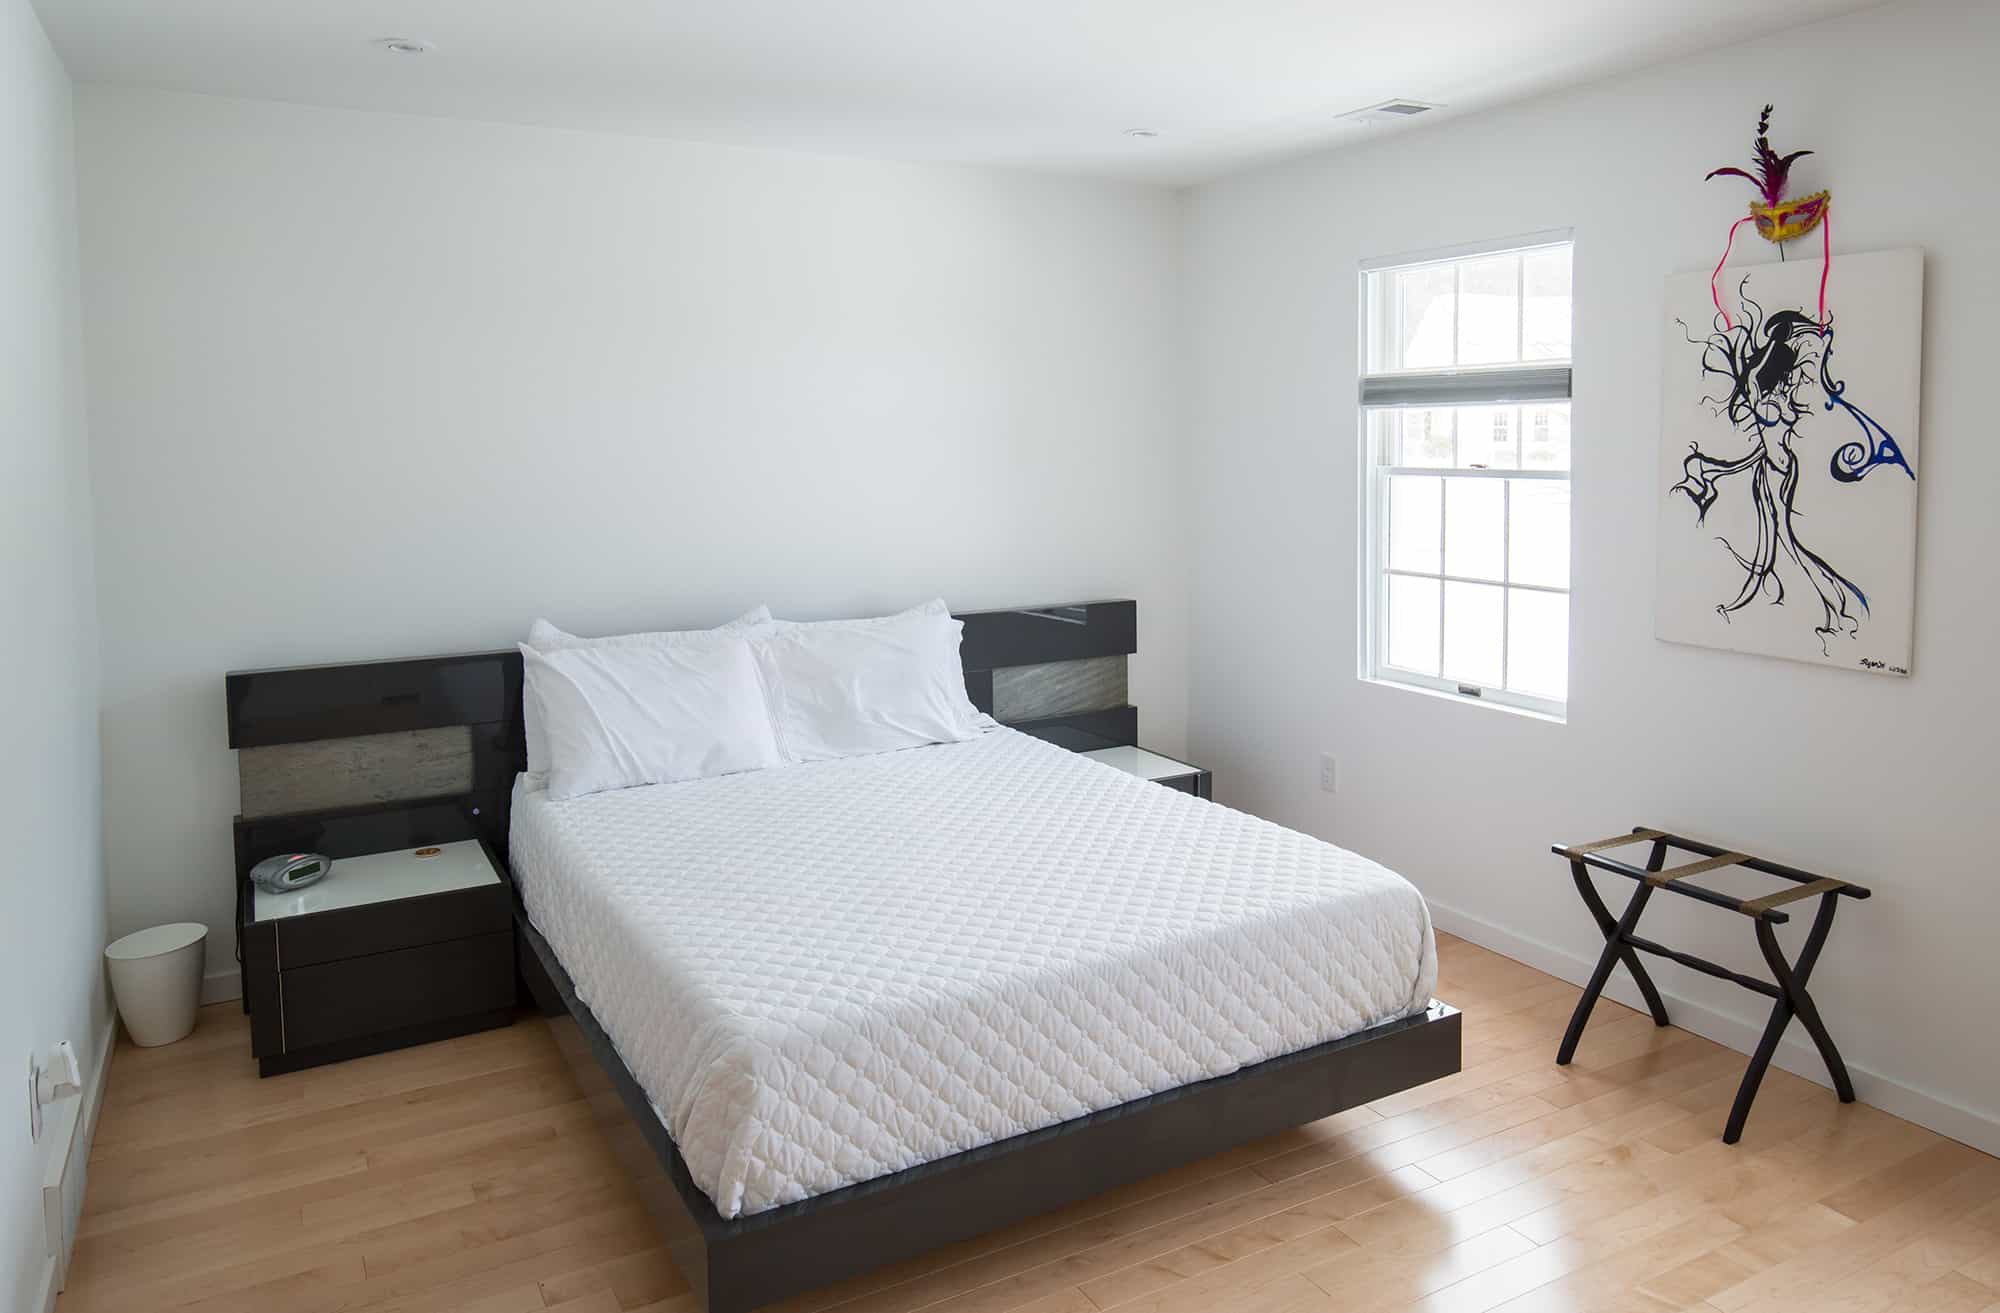 Voorheesville, NY Guest Bedroom Remodel